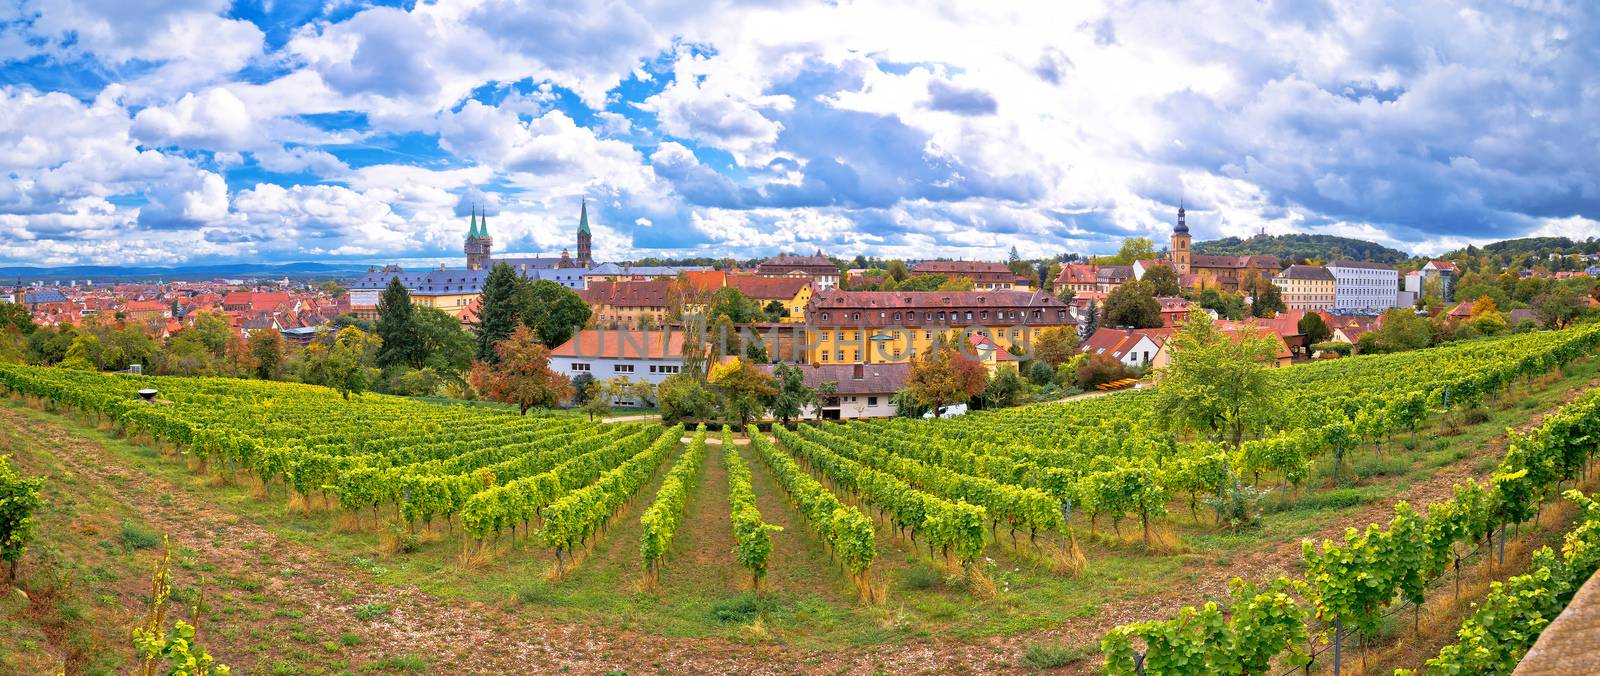 Bamberg. Town of Bamberg panoramic view from Michaelsberg vineya by xbrchx